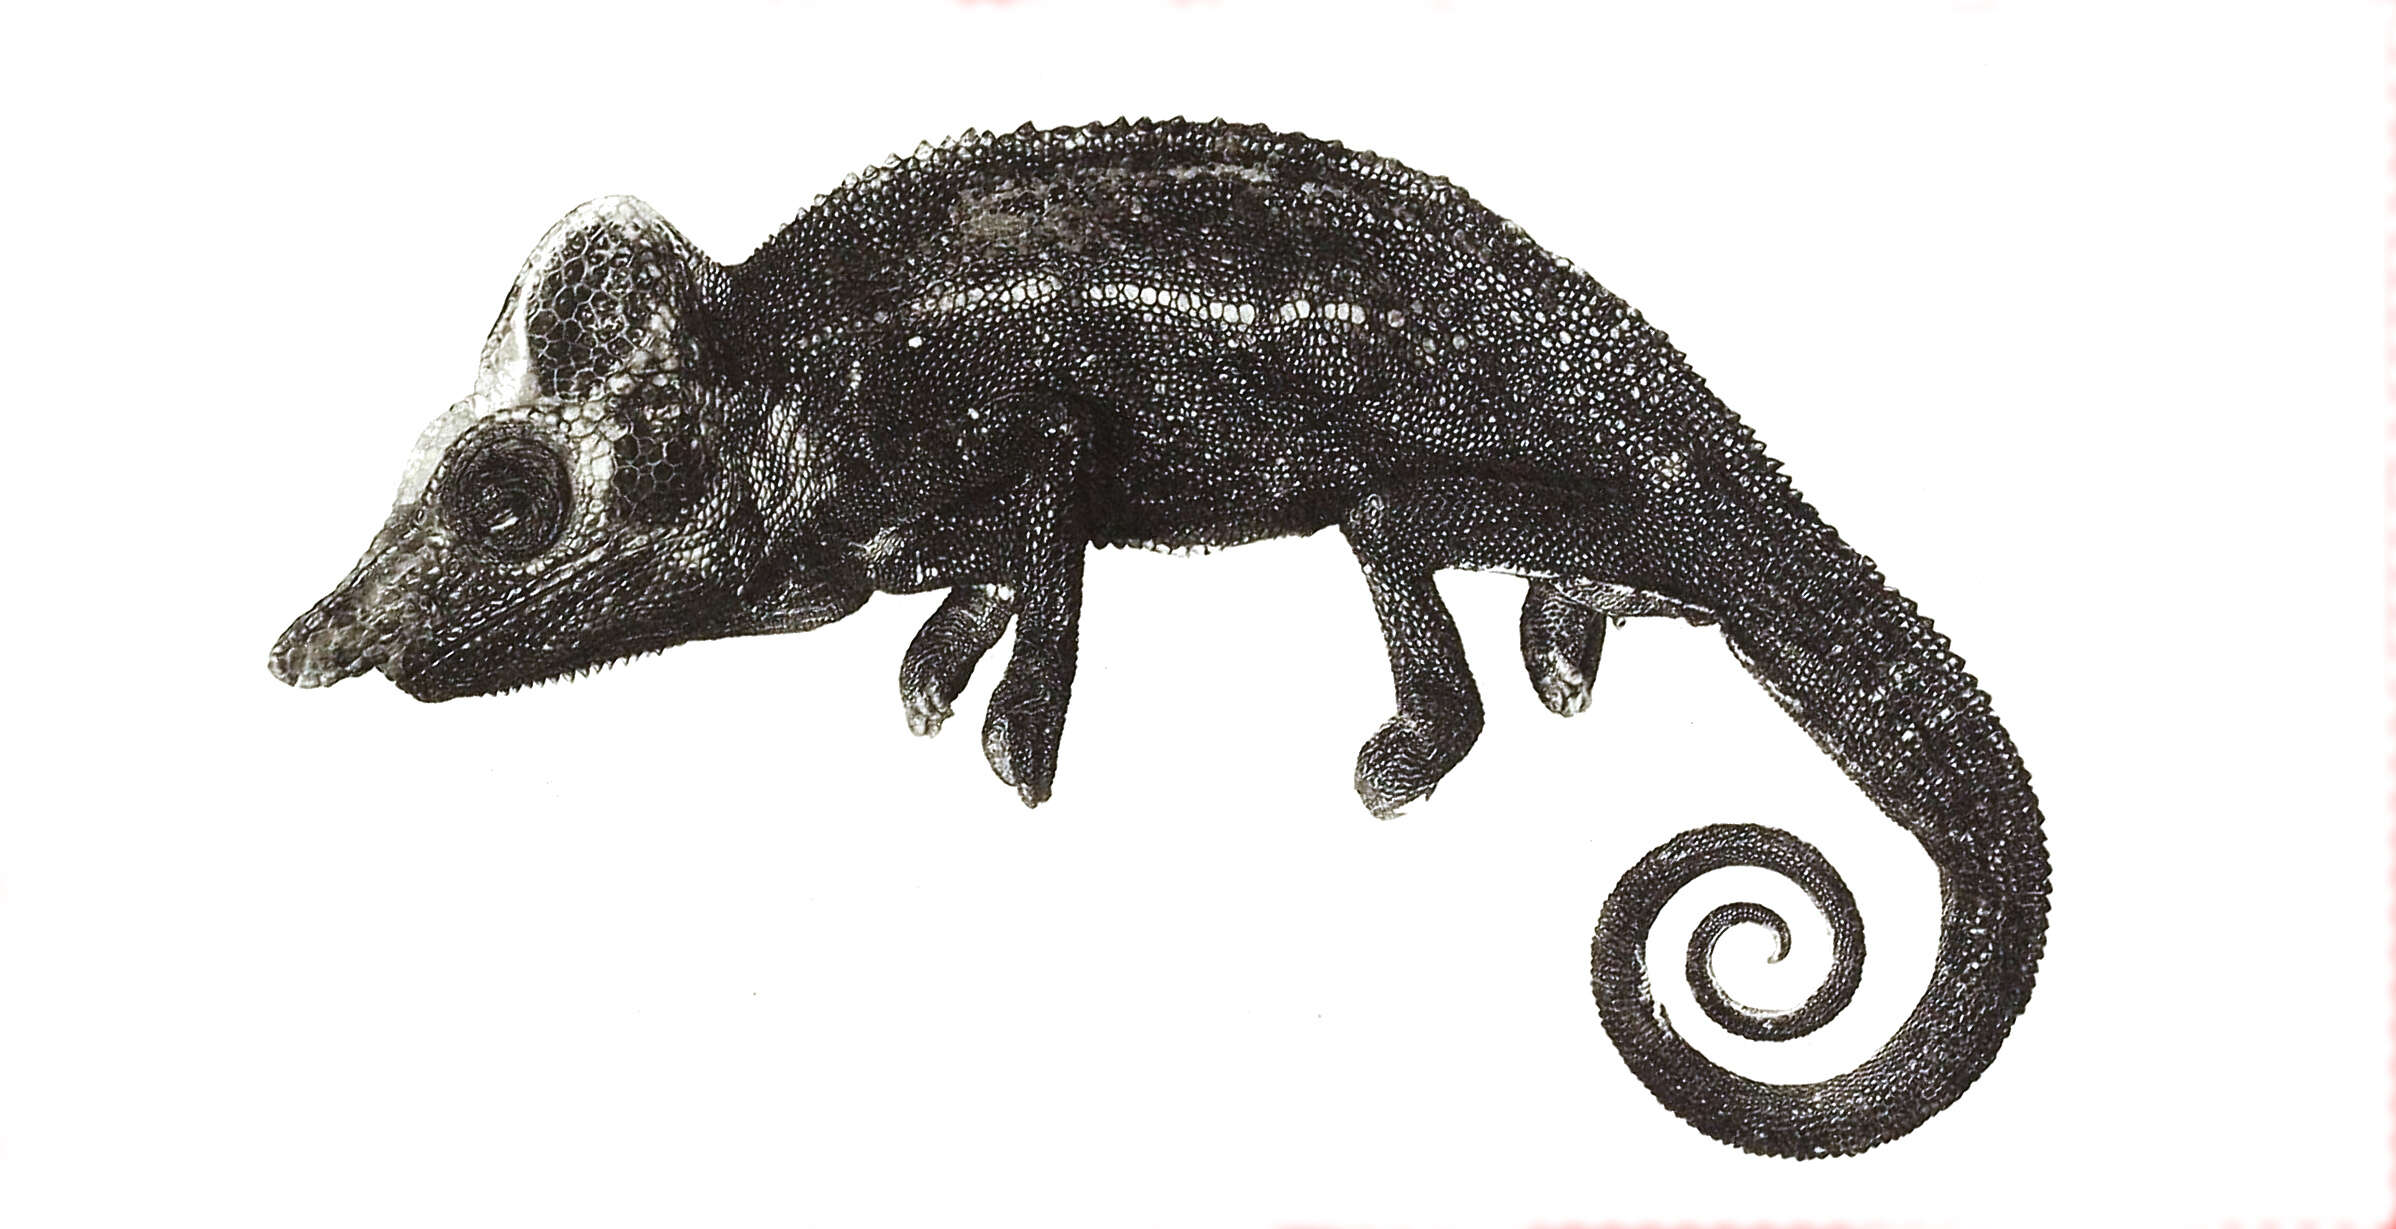 Image of Voeltzkow's chameleon